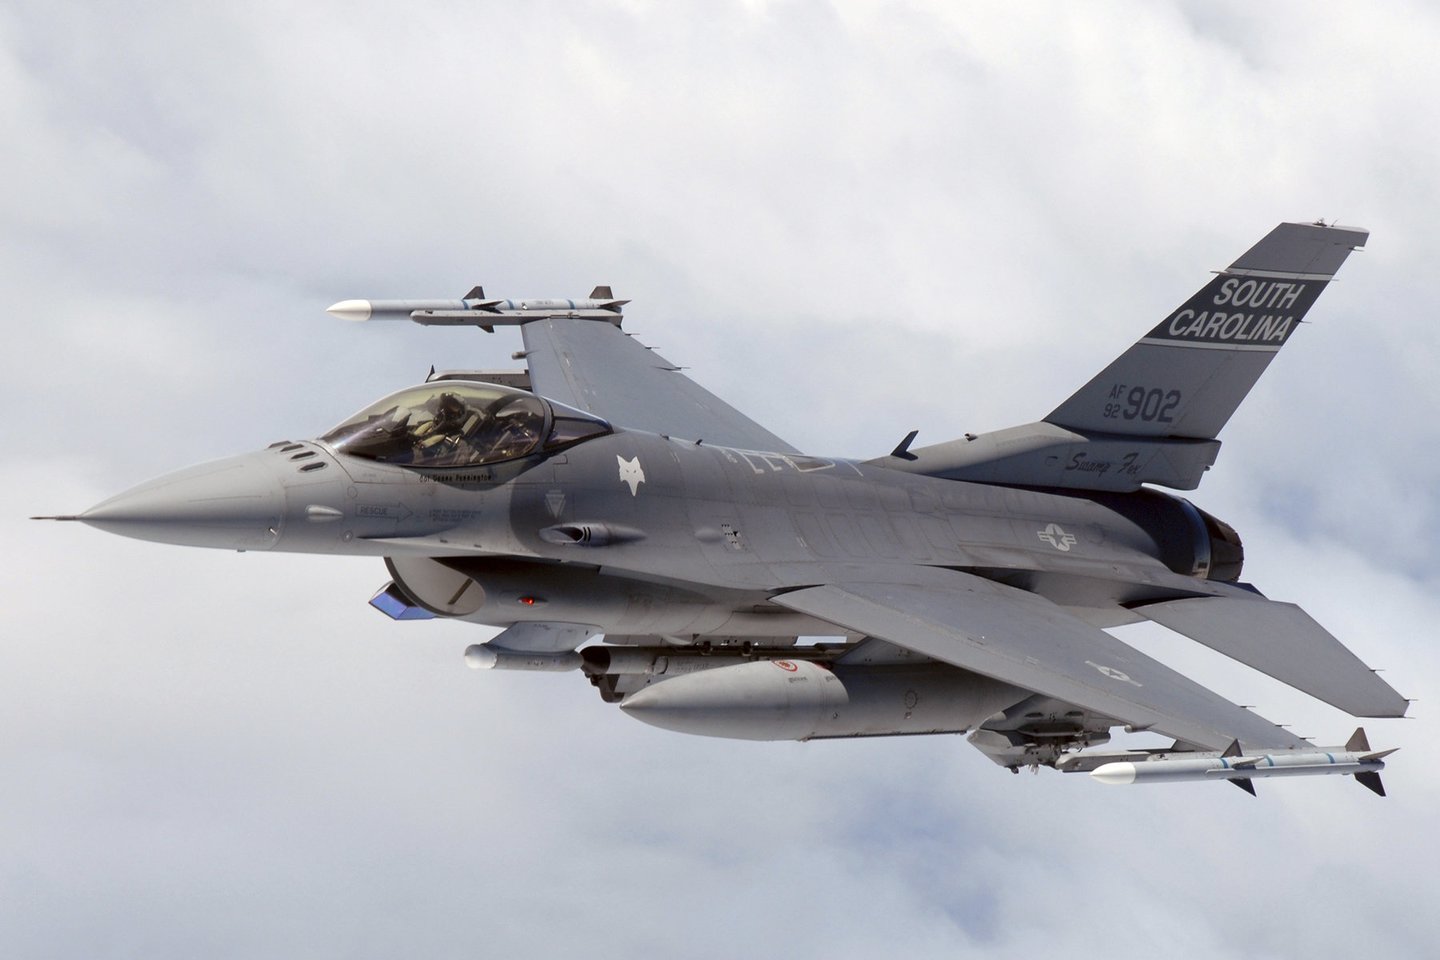  „General Dynamics F-16 Fighting Falcon“ yra labai manevringas naikintuvas. Tai reiškia, kad ypatingai staigiuose posūkiuose pilotas patiria didžiules apkrovas.<br> Wikimedia commons